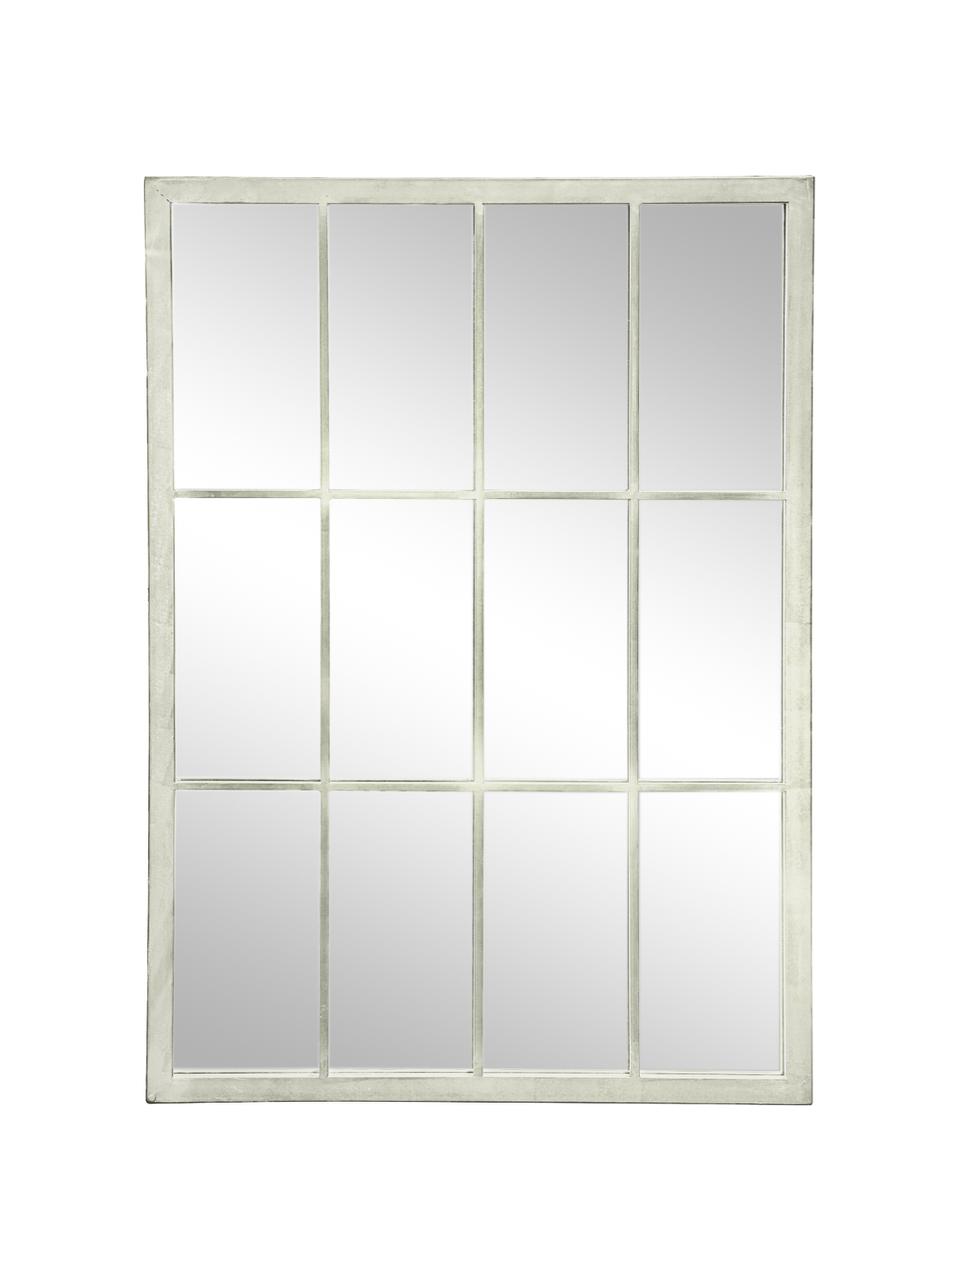 Eckiger Wandspiegel Zanetti mit weißem Metallrahmen, Rahmen: Metall, lackiert, Spiegelfläche: Spiegelglas, Weiß, B 50 x H 70 cm